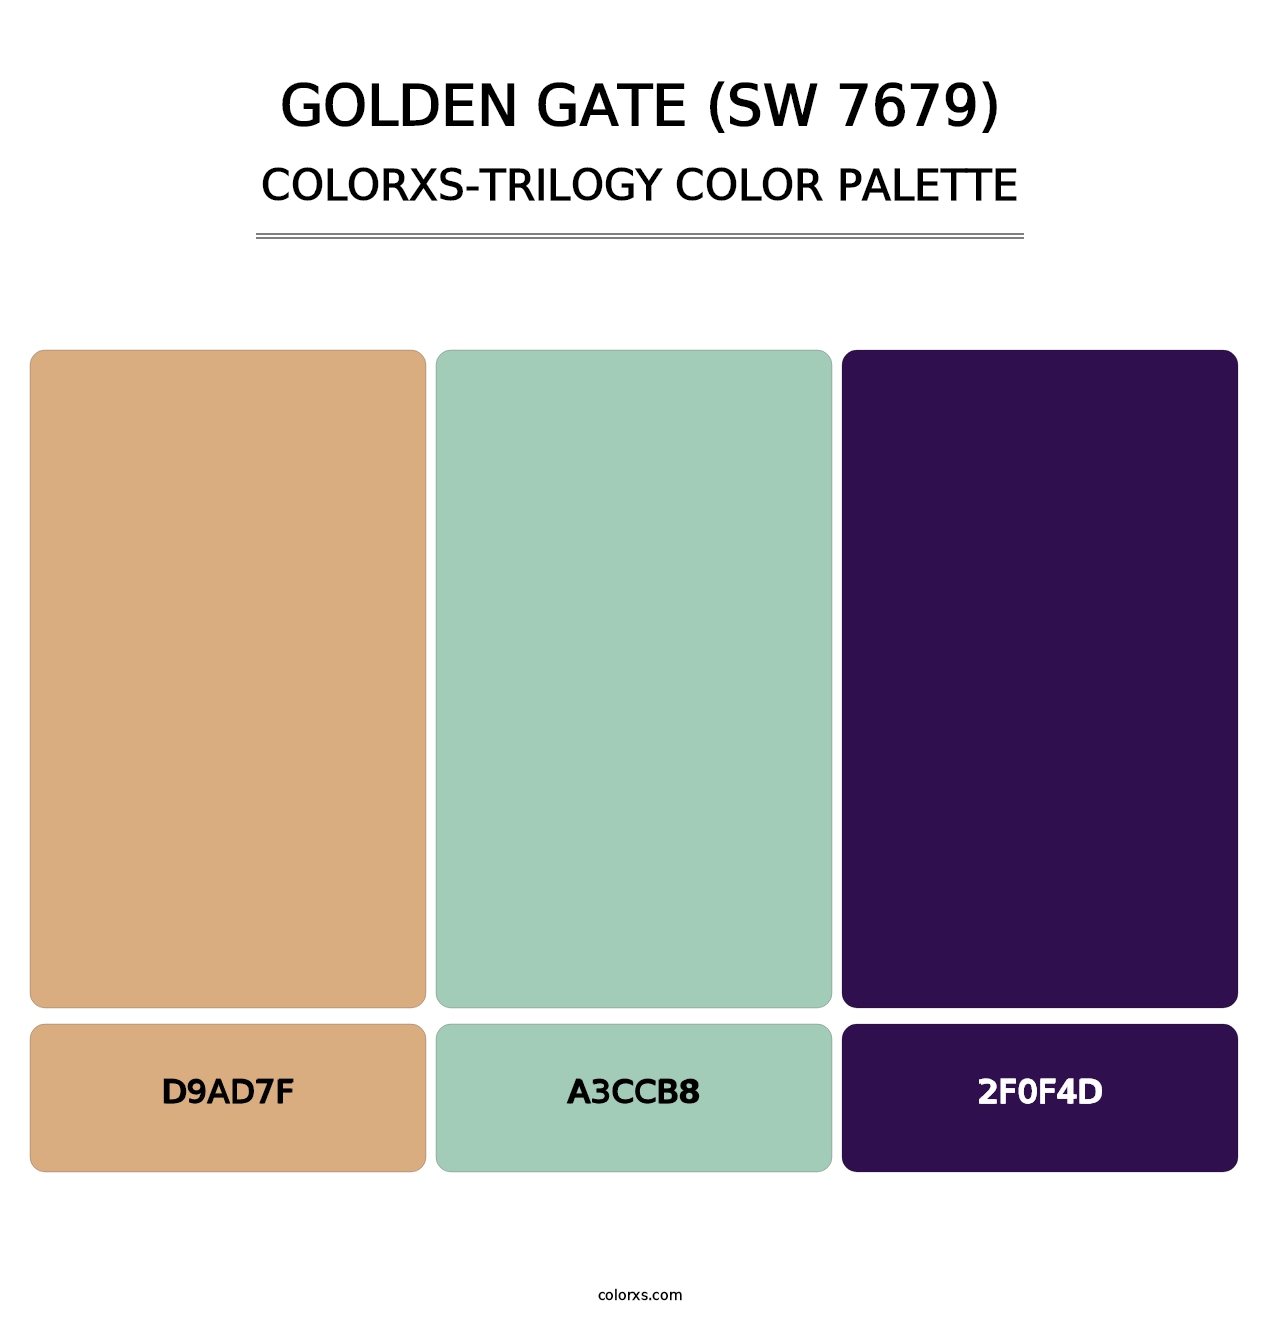 Golden Gate (SW 7679) - Colorxs Trilogy Palette